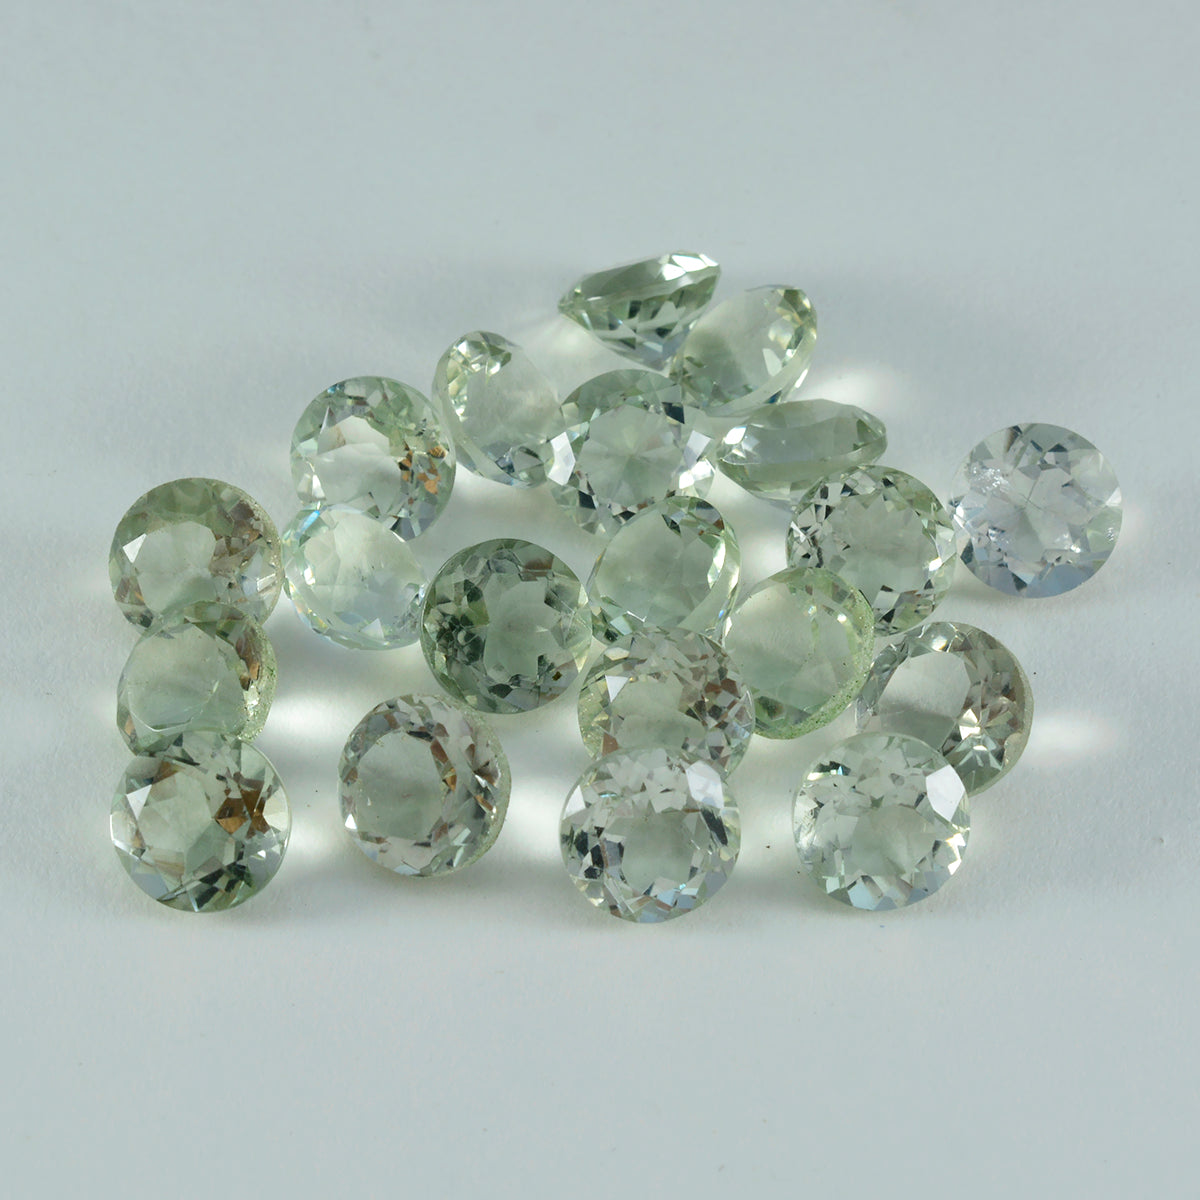 Riyogems 1 pièce d'améthyste verte à facettes 5x5mm, forme ronde, belle qualité, pierres précieuses en vrac